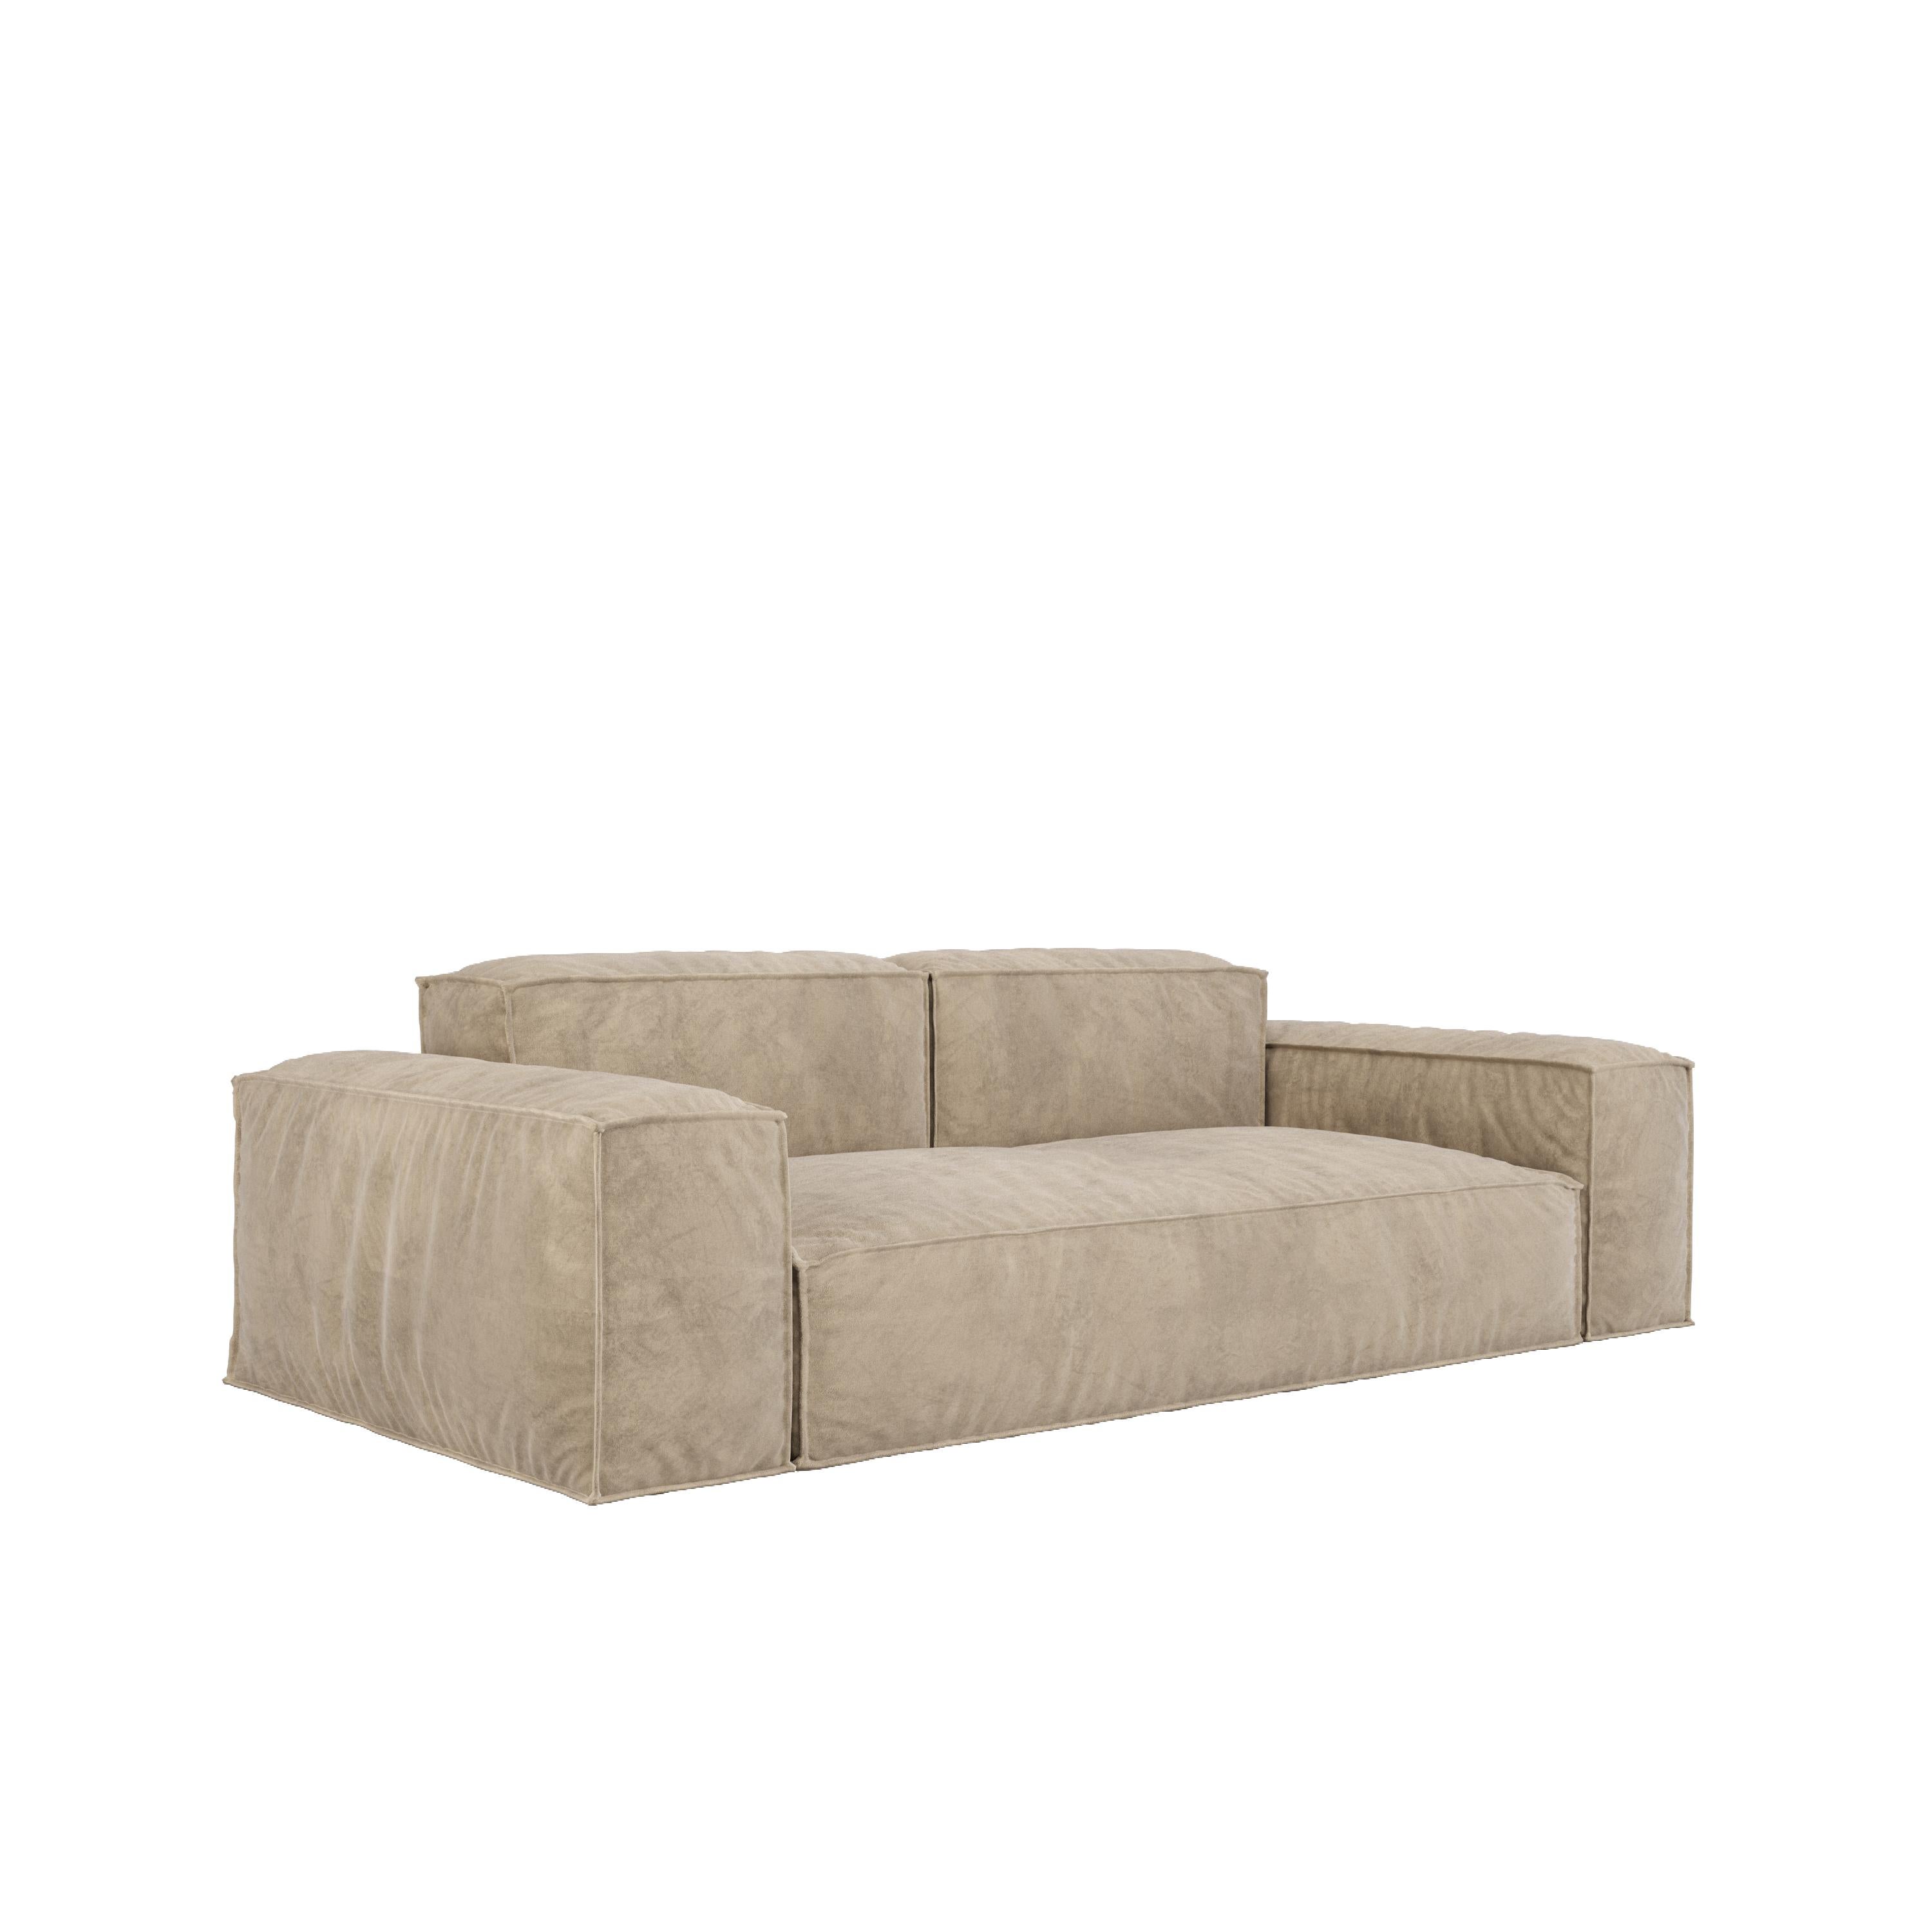 Le canapé CLOUD est le summum du confort, conçu pour ceux qui recherchent une solution d'assise unique et luxueuse. Dévoilant une expérience polyvalente et confortable, ce canapé est un choix idéal pour les personnes qui apprécient un design